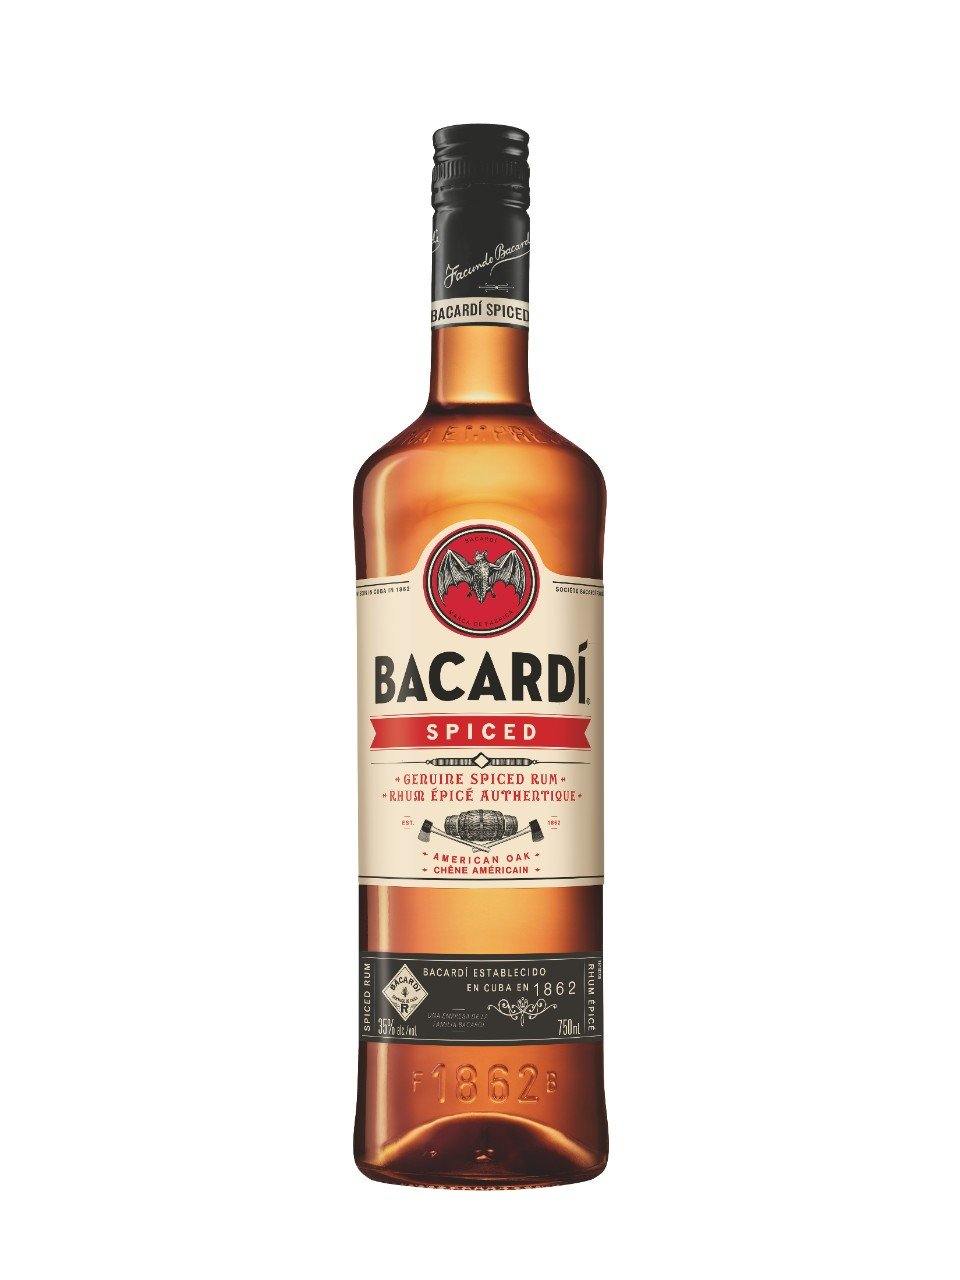 Bacardi Spiced Rum 750 mL bottle - Speedy Booze